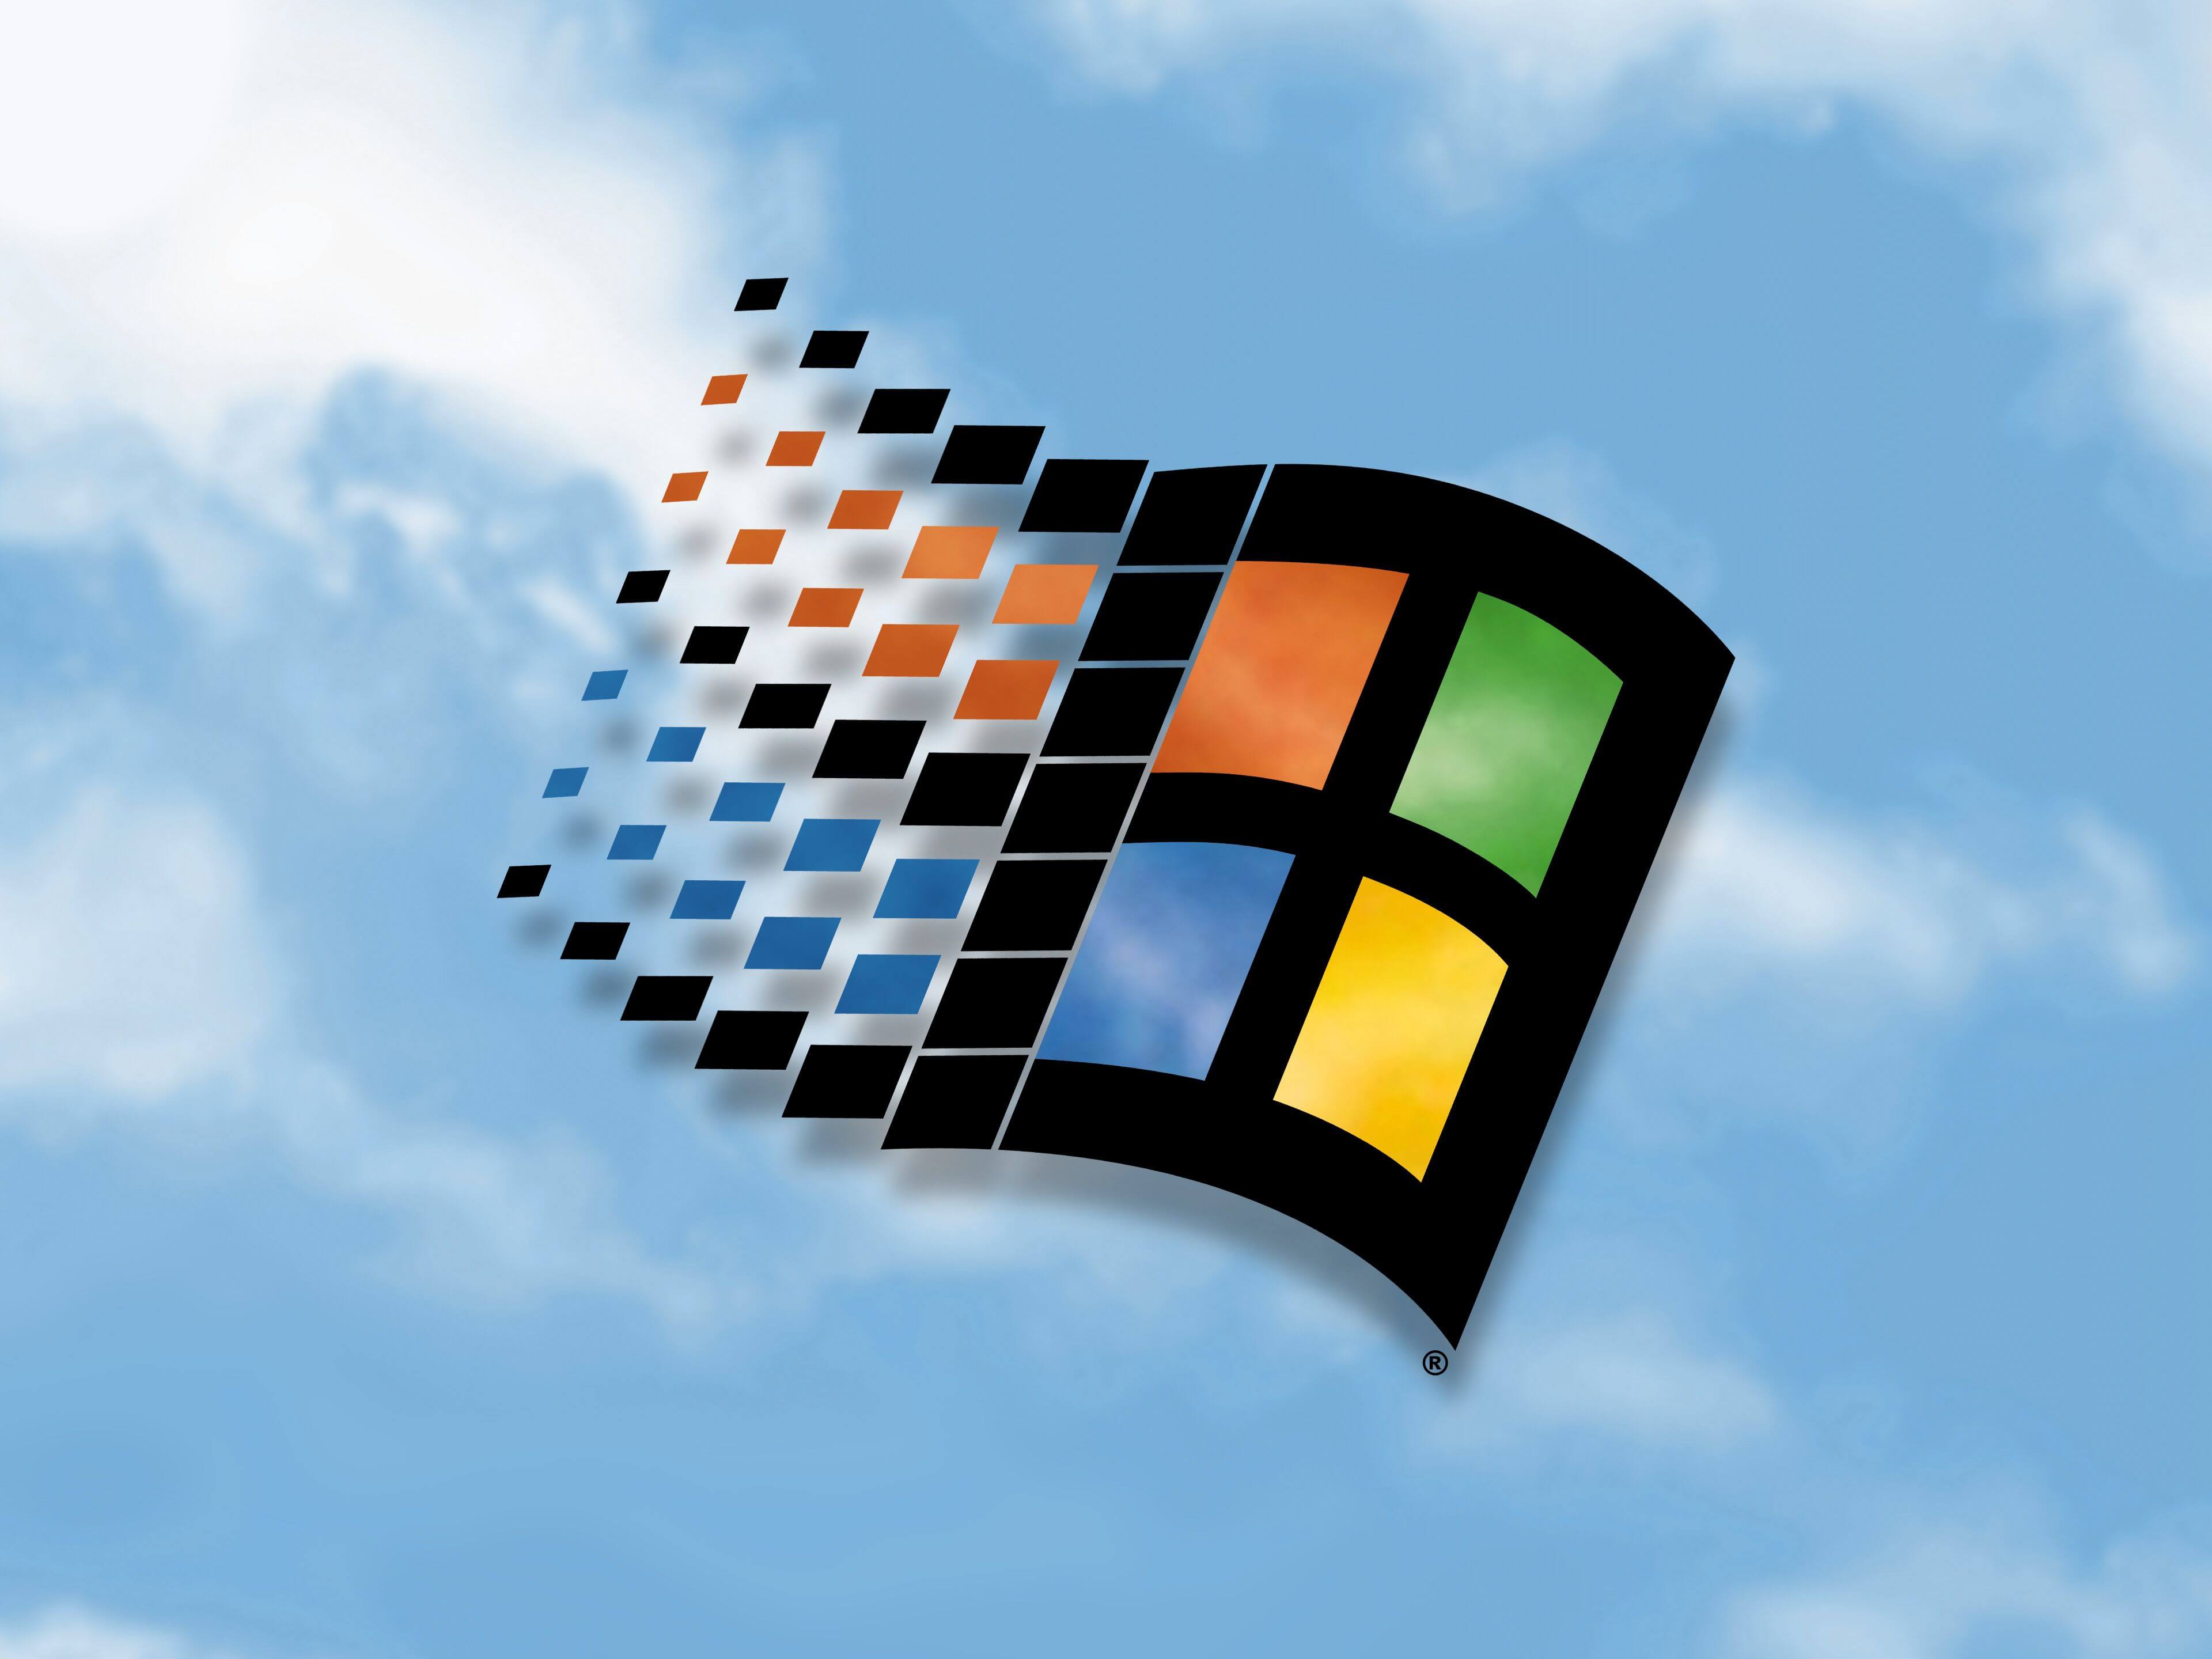 Khám phá thế giới kỷ niệm với hình ảnh Windows 98 độc đáo này.